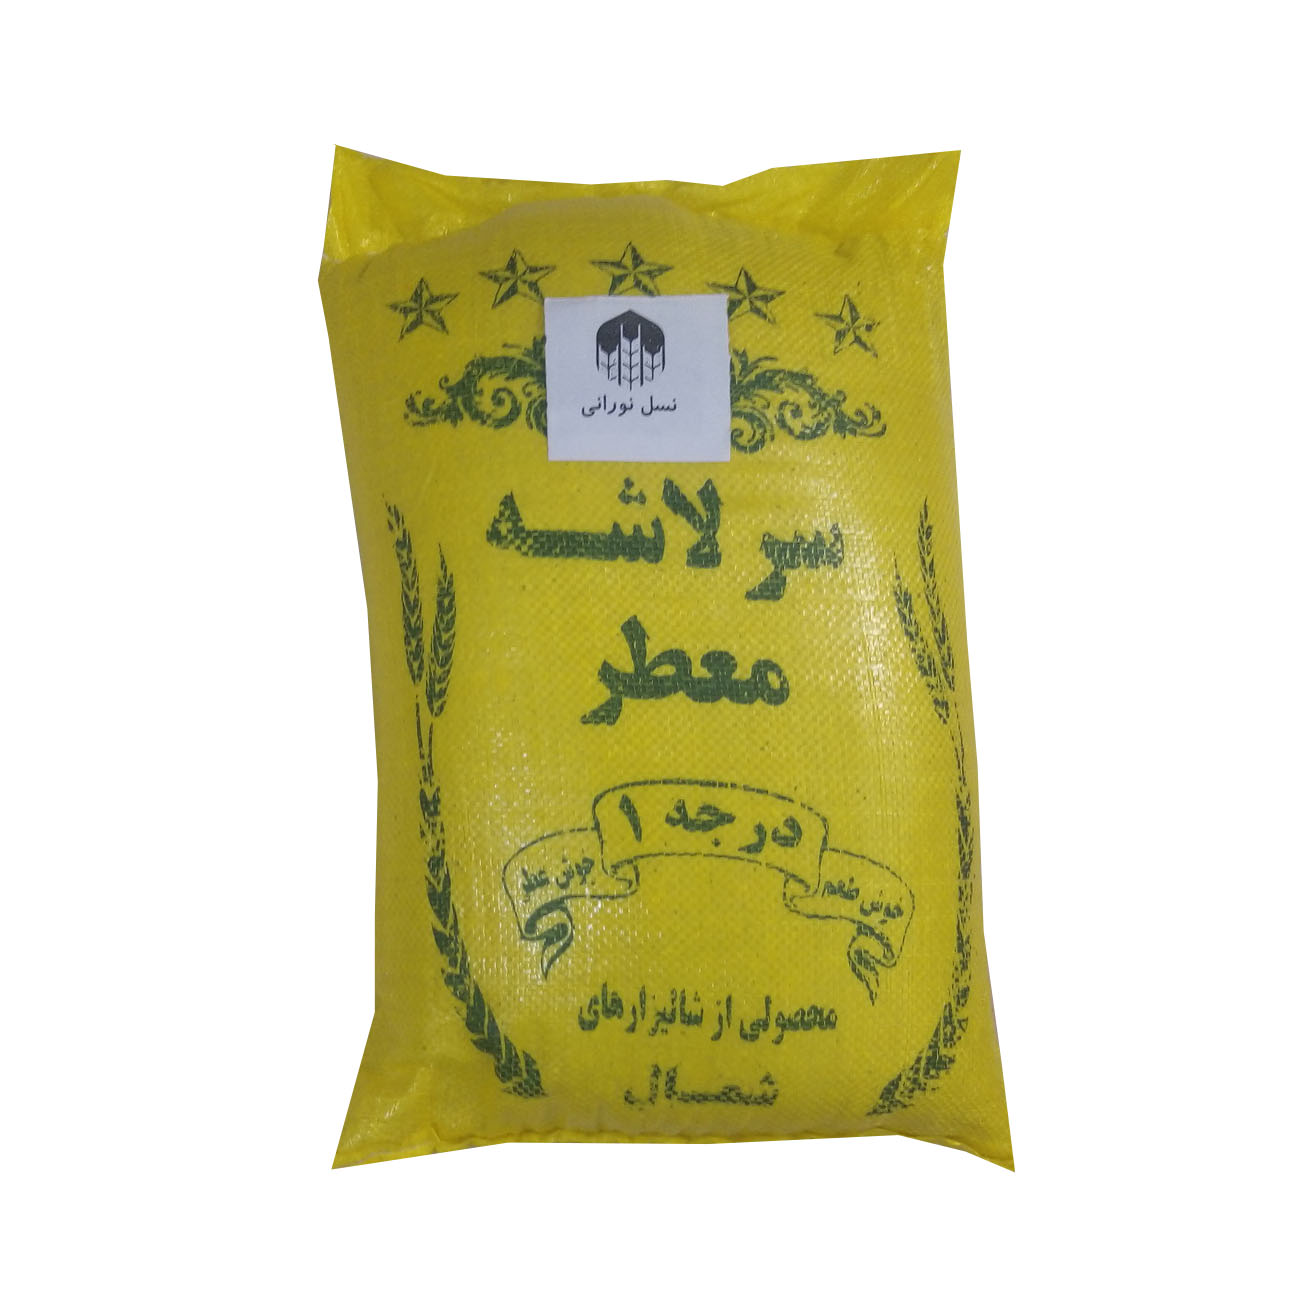 نکته خرید - قیمت روز برنج سر لاشه ایرانی معطر - 10 کیلوگرم خرید